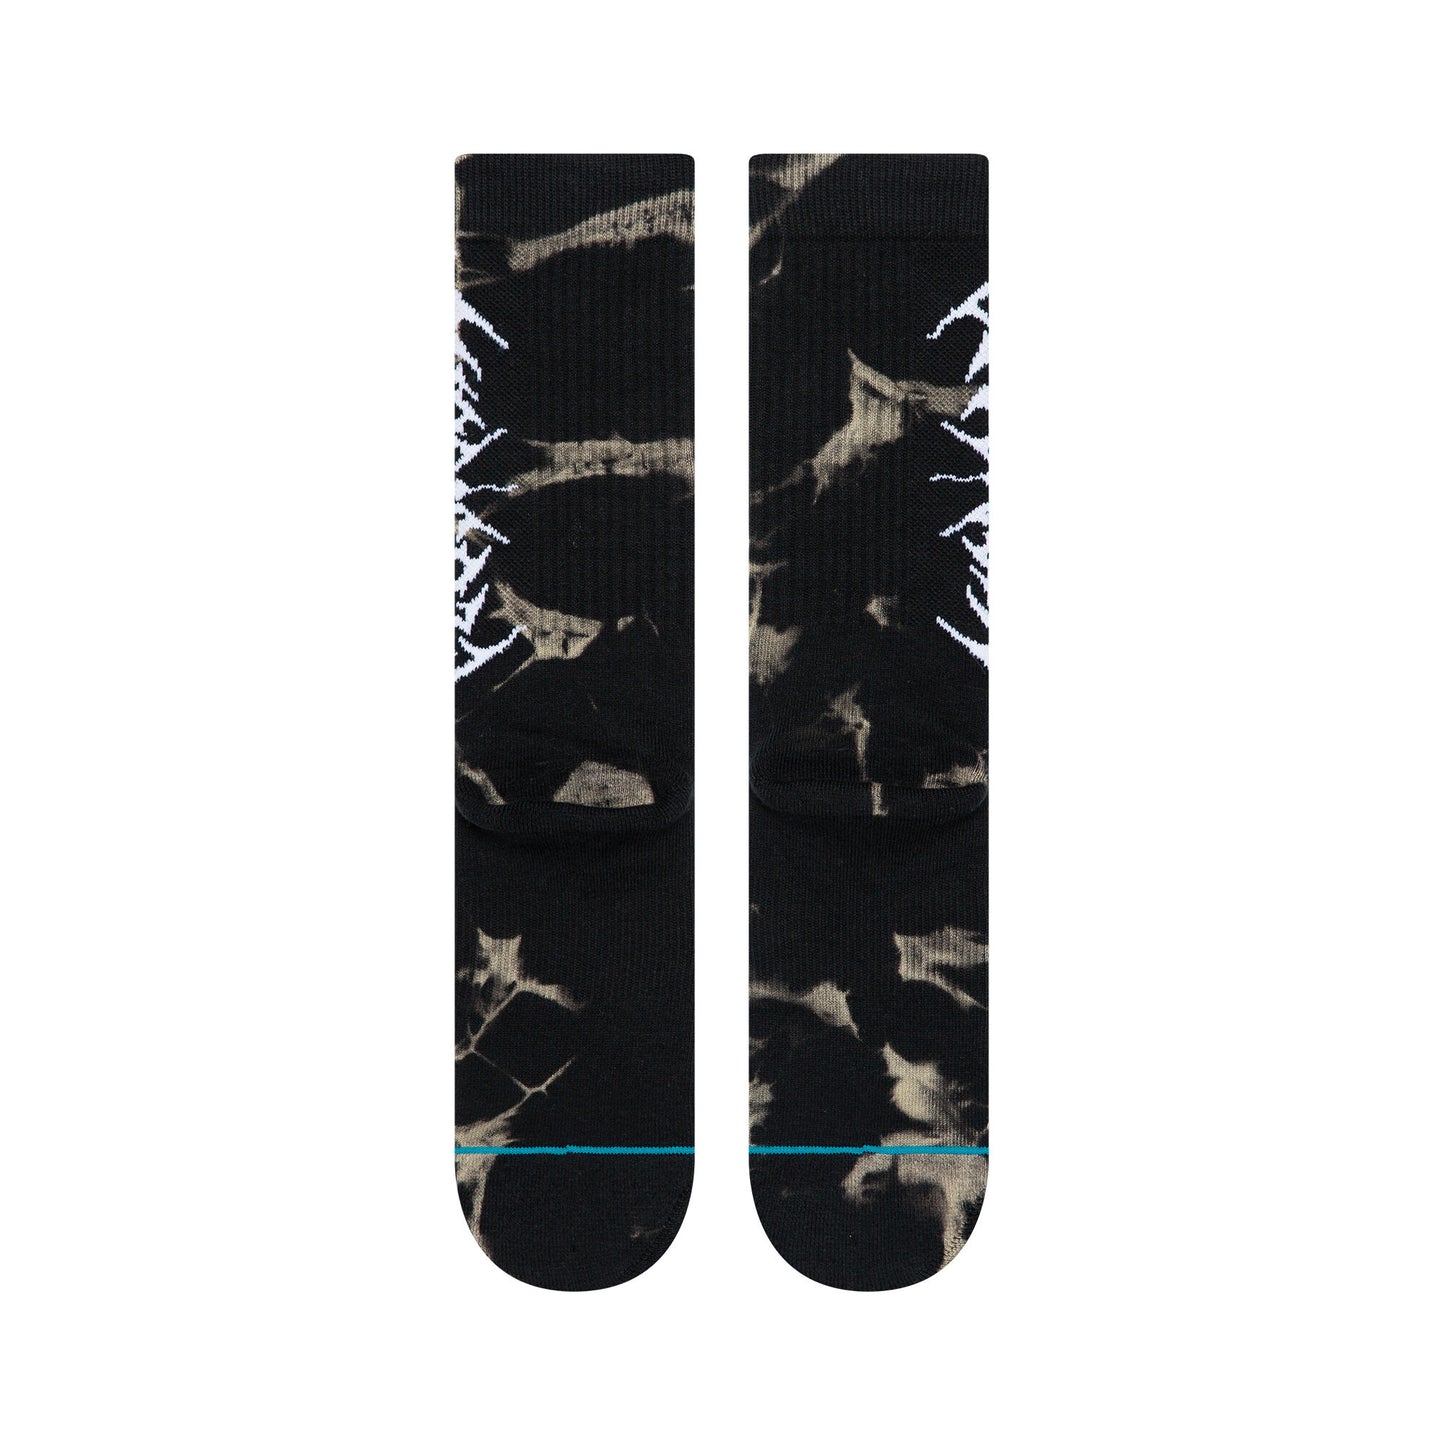 Stance x Lil Uzi Vert - Uzi Dye Men's Socks, Black